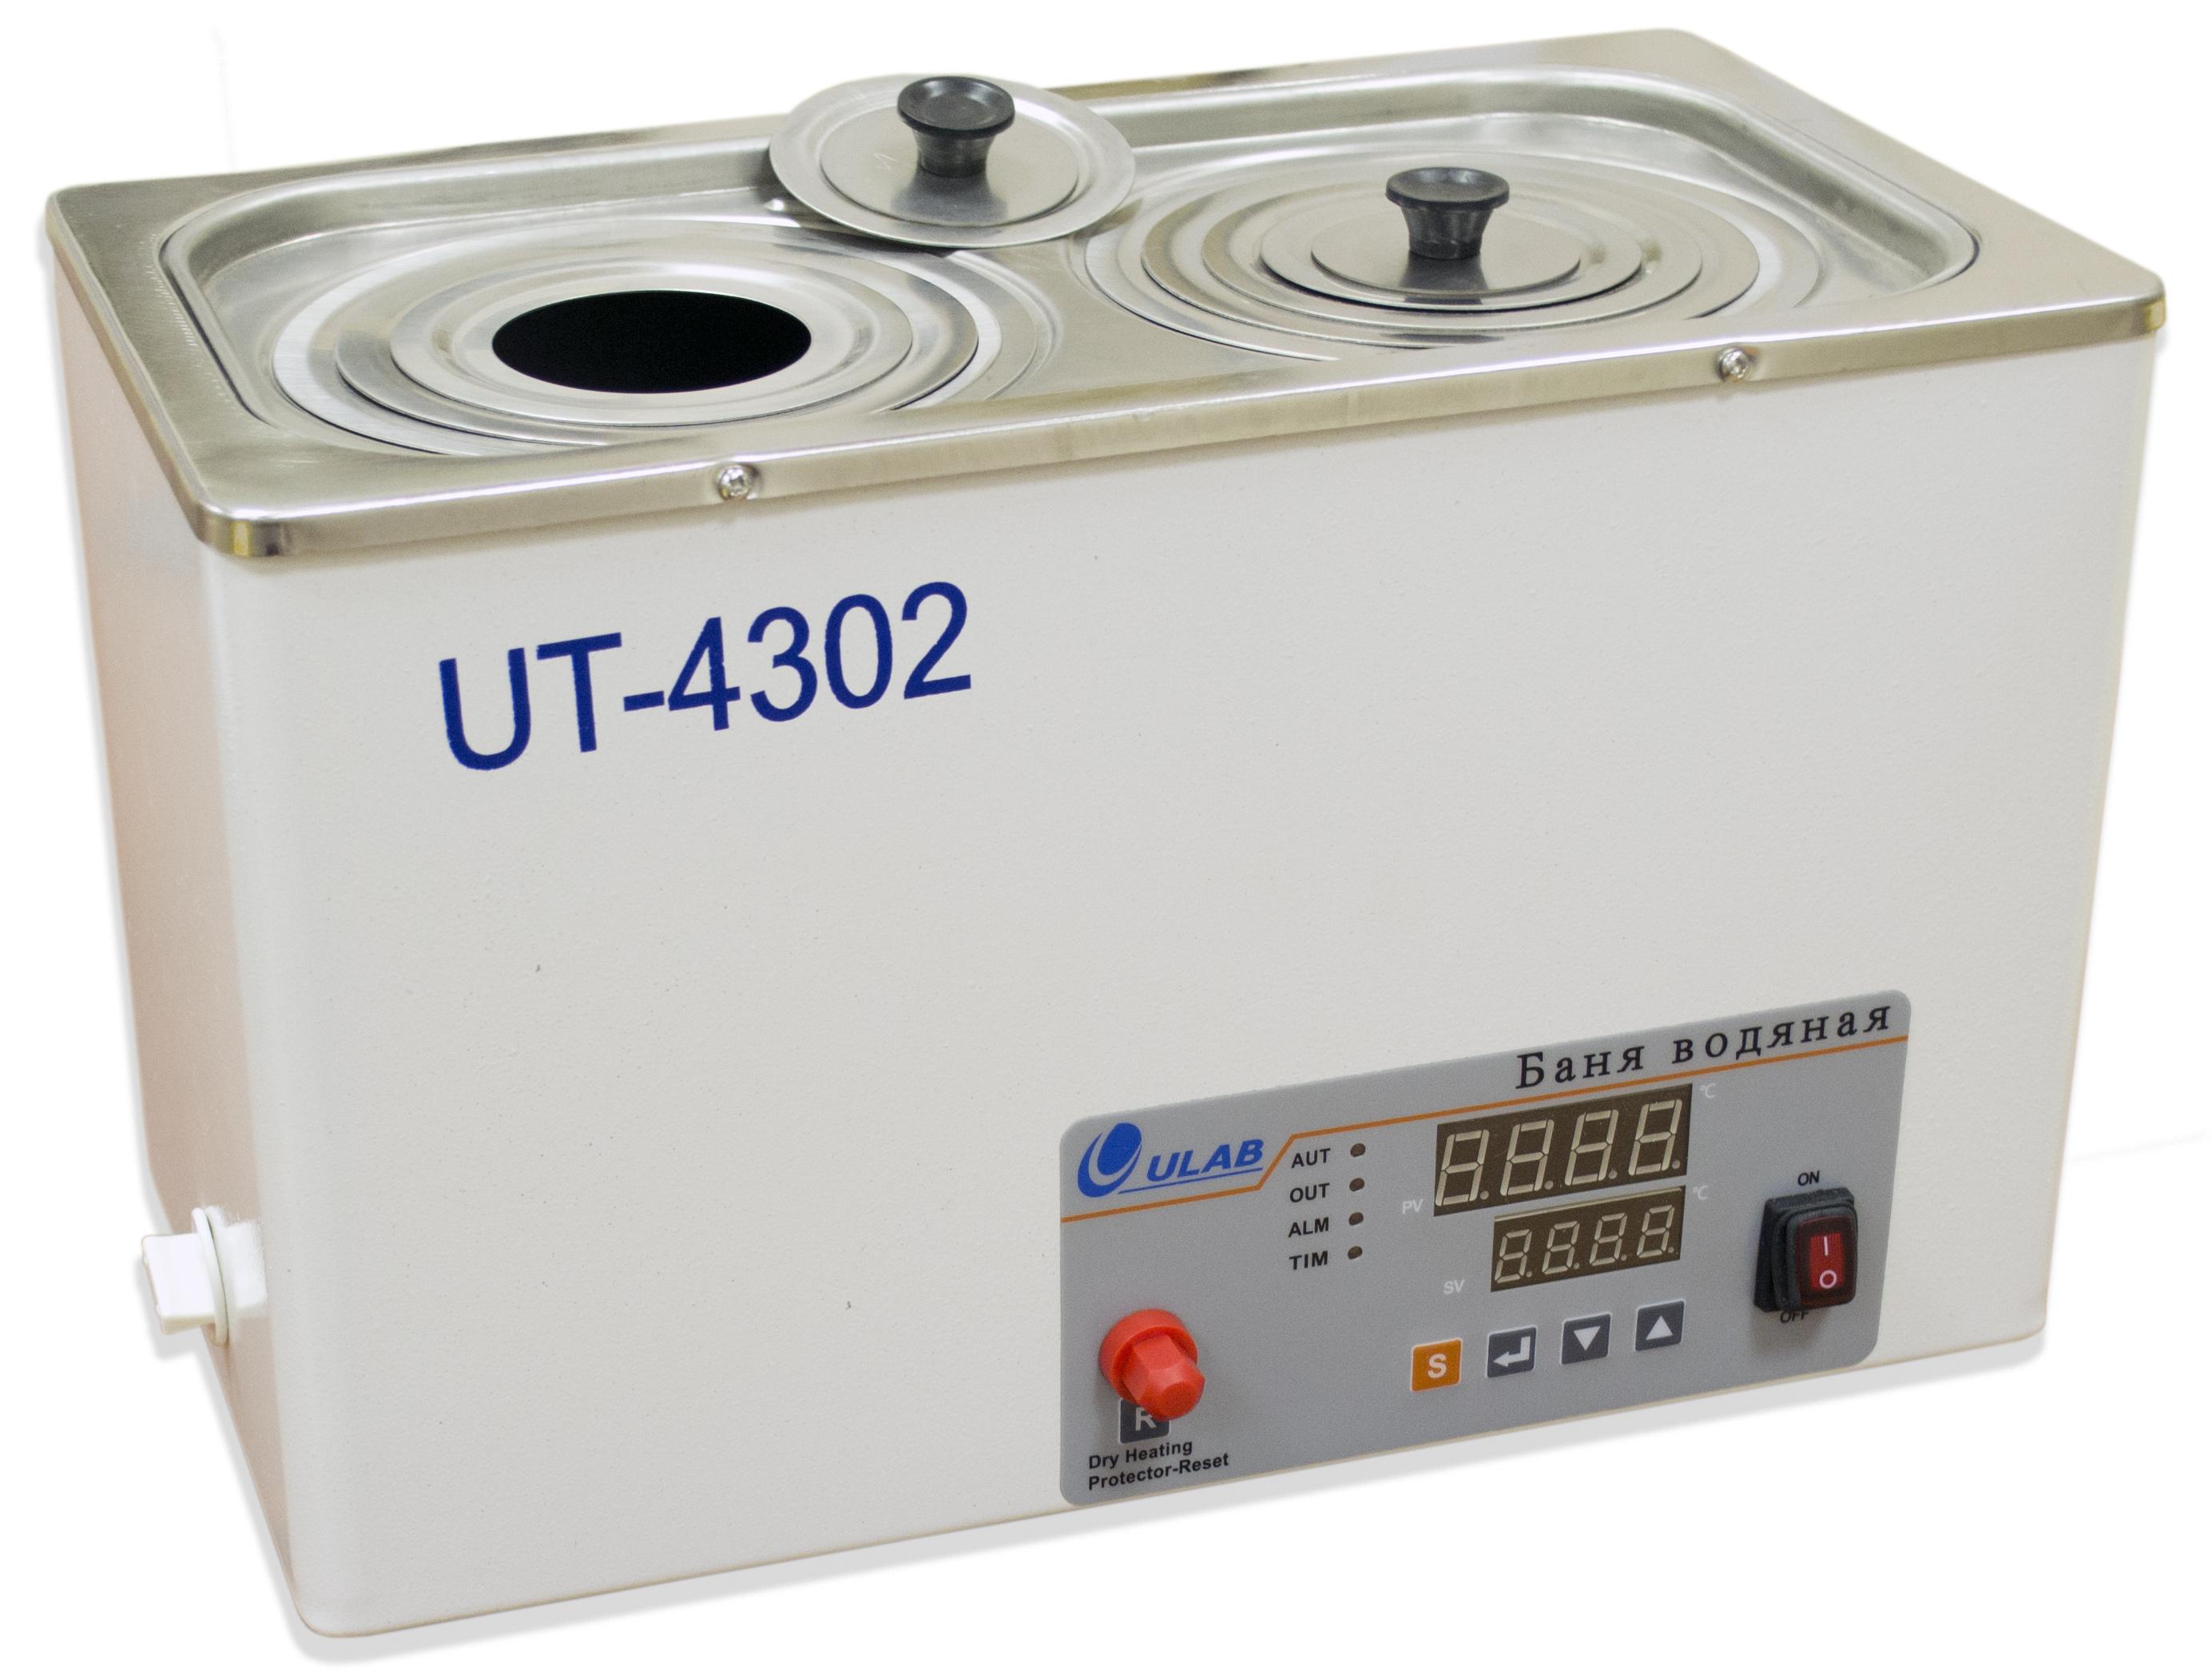 UT-4302 Баня водяная двухместная, ULAB® Цена Купить